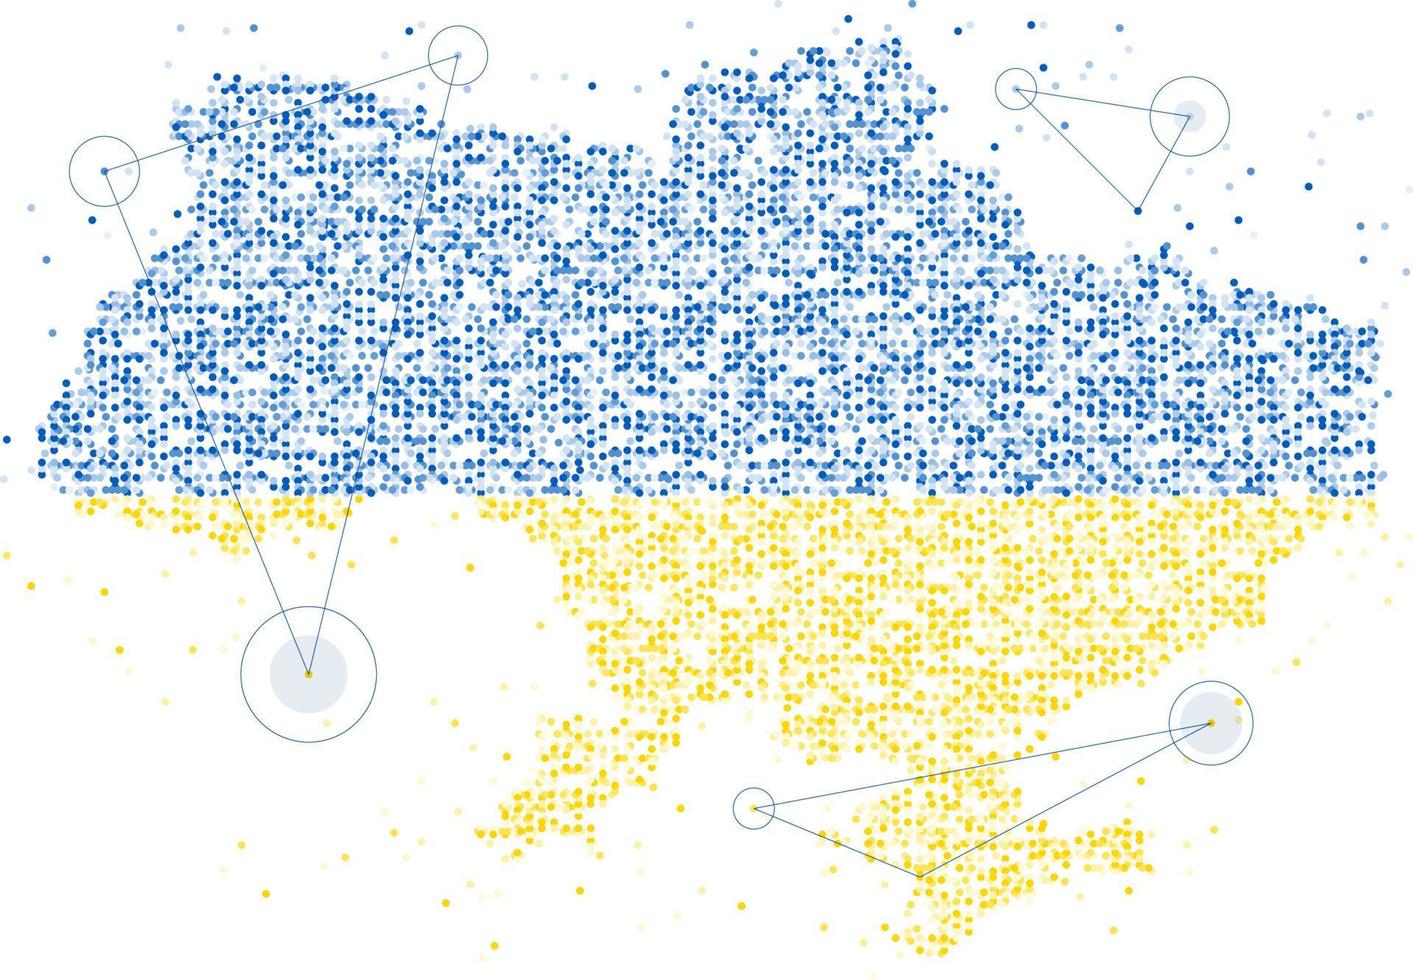 abstrakt geometrisk cirkel prickmönster partikel ukraina karta med nationell flagga färg, vr teknologi fred be och stoppa krig konceptdesign illustration på vit bakgrund med kopia utrymme vektor